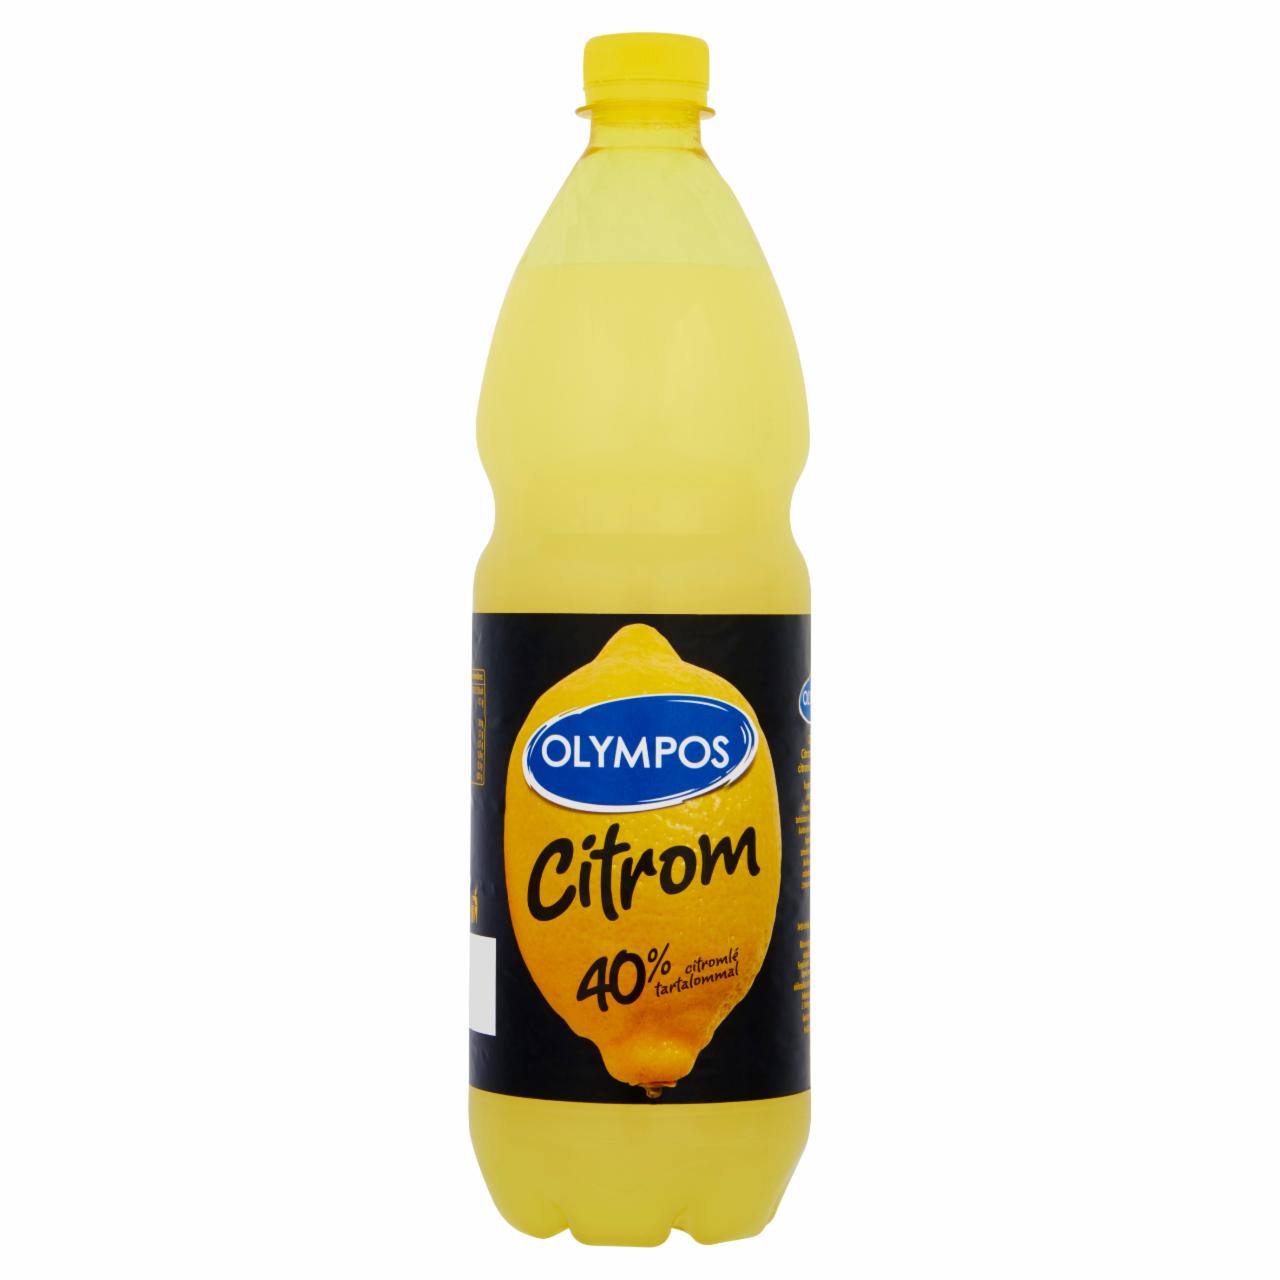 Képek - Olympos citrom ízesítő 40% citromlé tartalommal 1 l